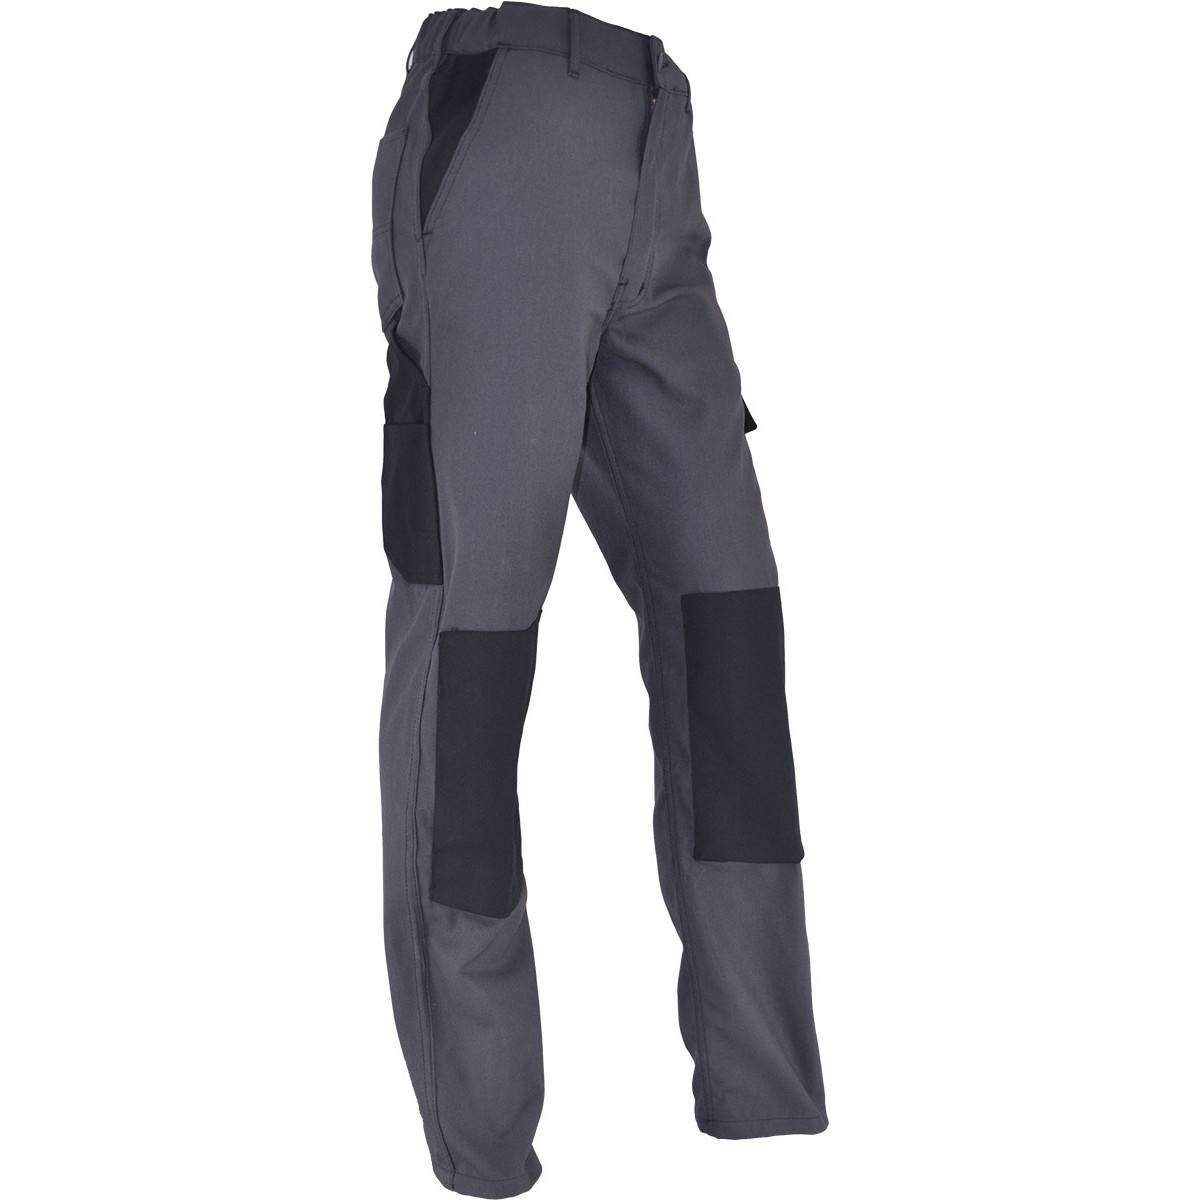 Pantalon de travail confort taille 44, gris Anthracite, poches multiples, genouillères chantiers incluses